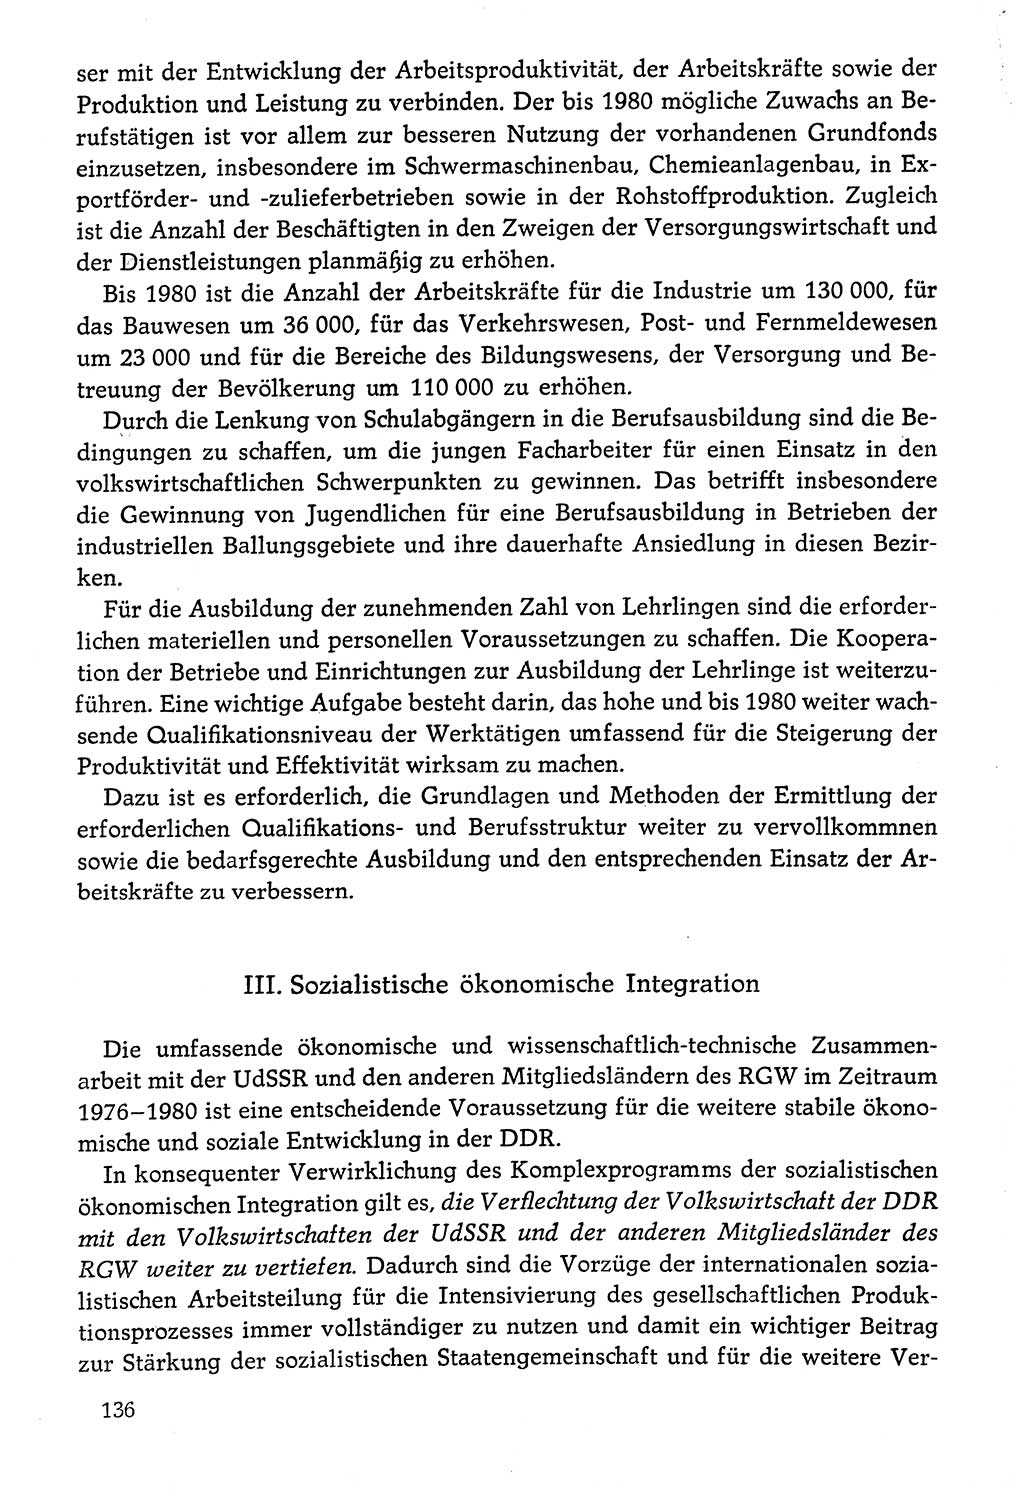 Dokumente der Sozialistischen Einheitspartei Deutschlands (SED) [Deutsche Demokratische Republik (DDR)] 1976-1977, Seite 136 (Dok. SED DDR 1976-1977, S. 136)